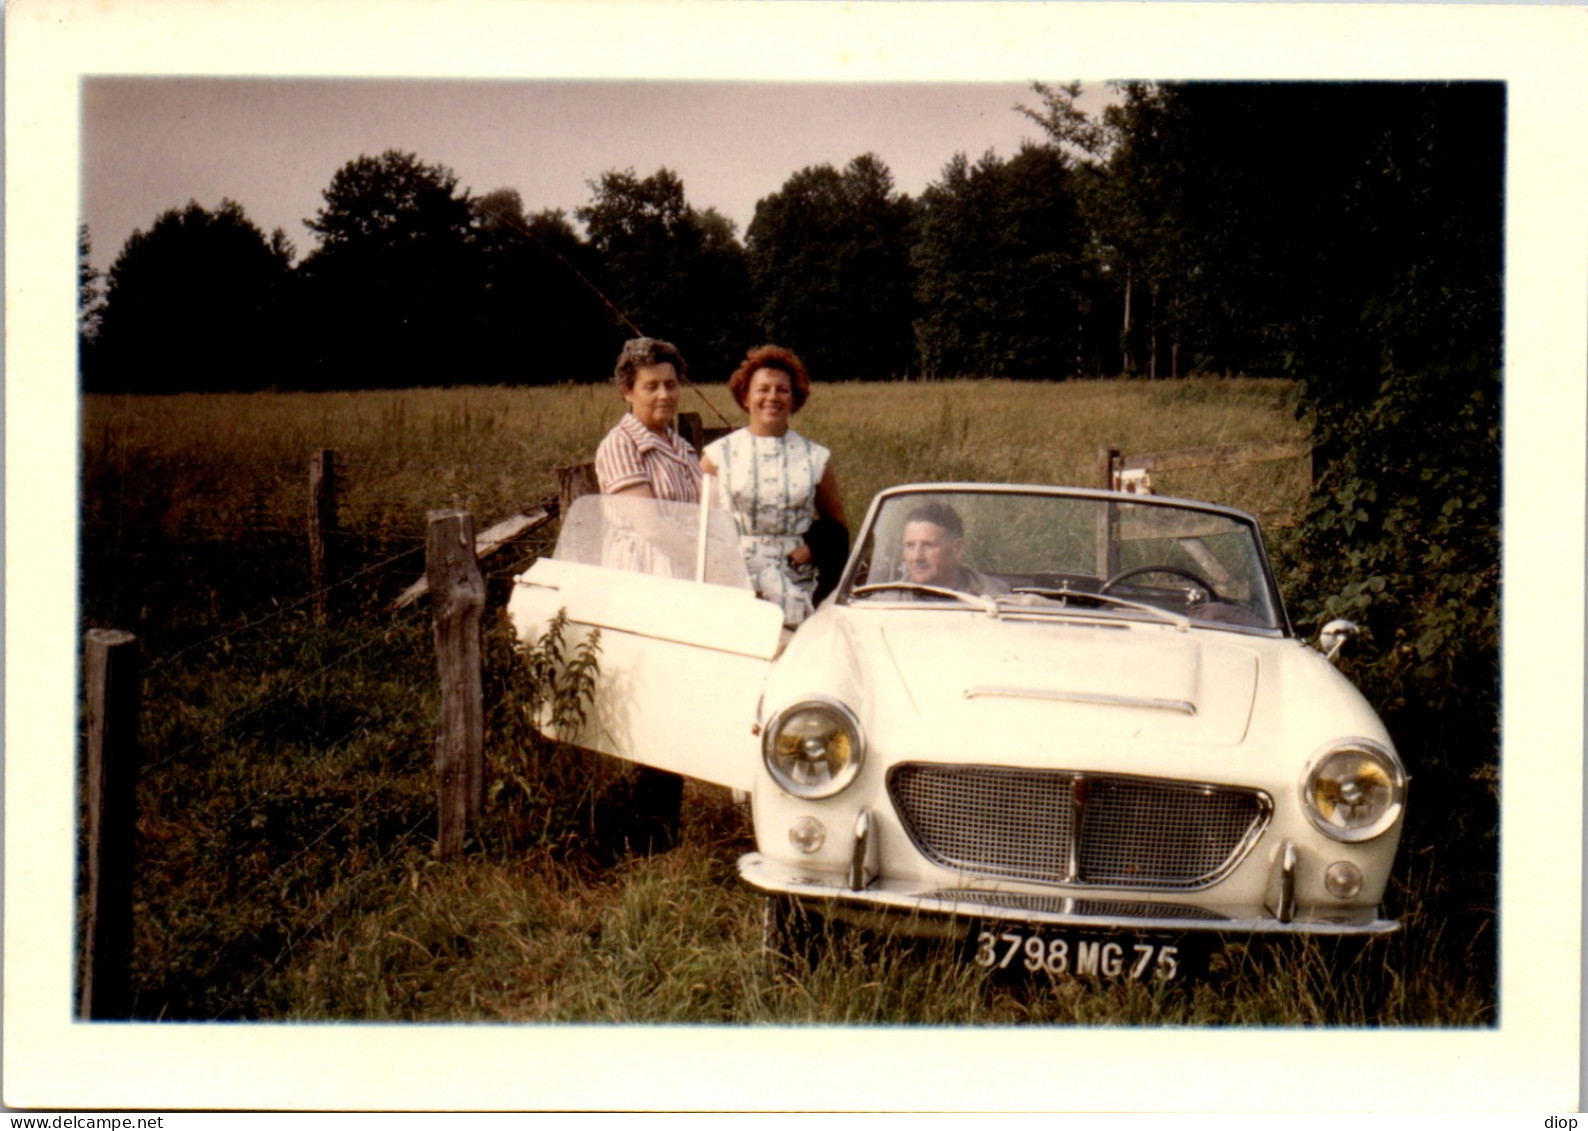 Photographie Photo Vintage Snapshot Amateur Automobile Voiture Auto Cabriolet - Automobiles